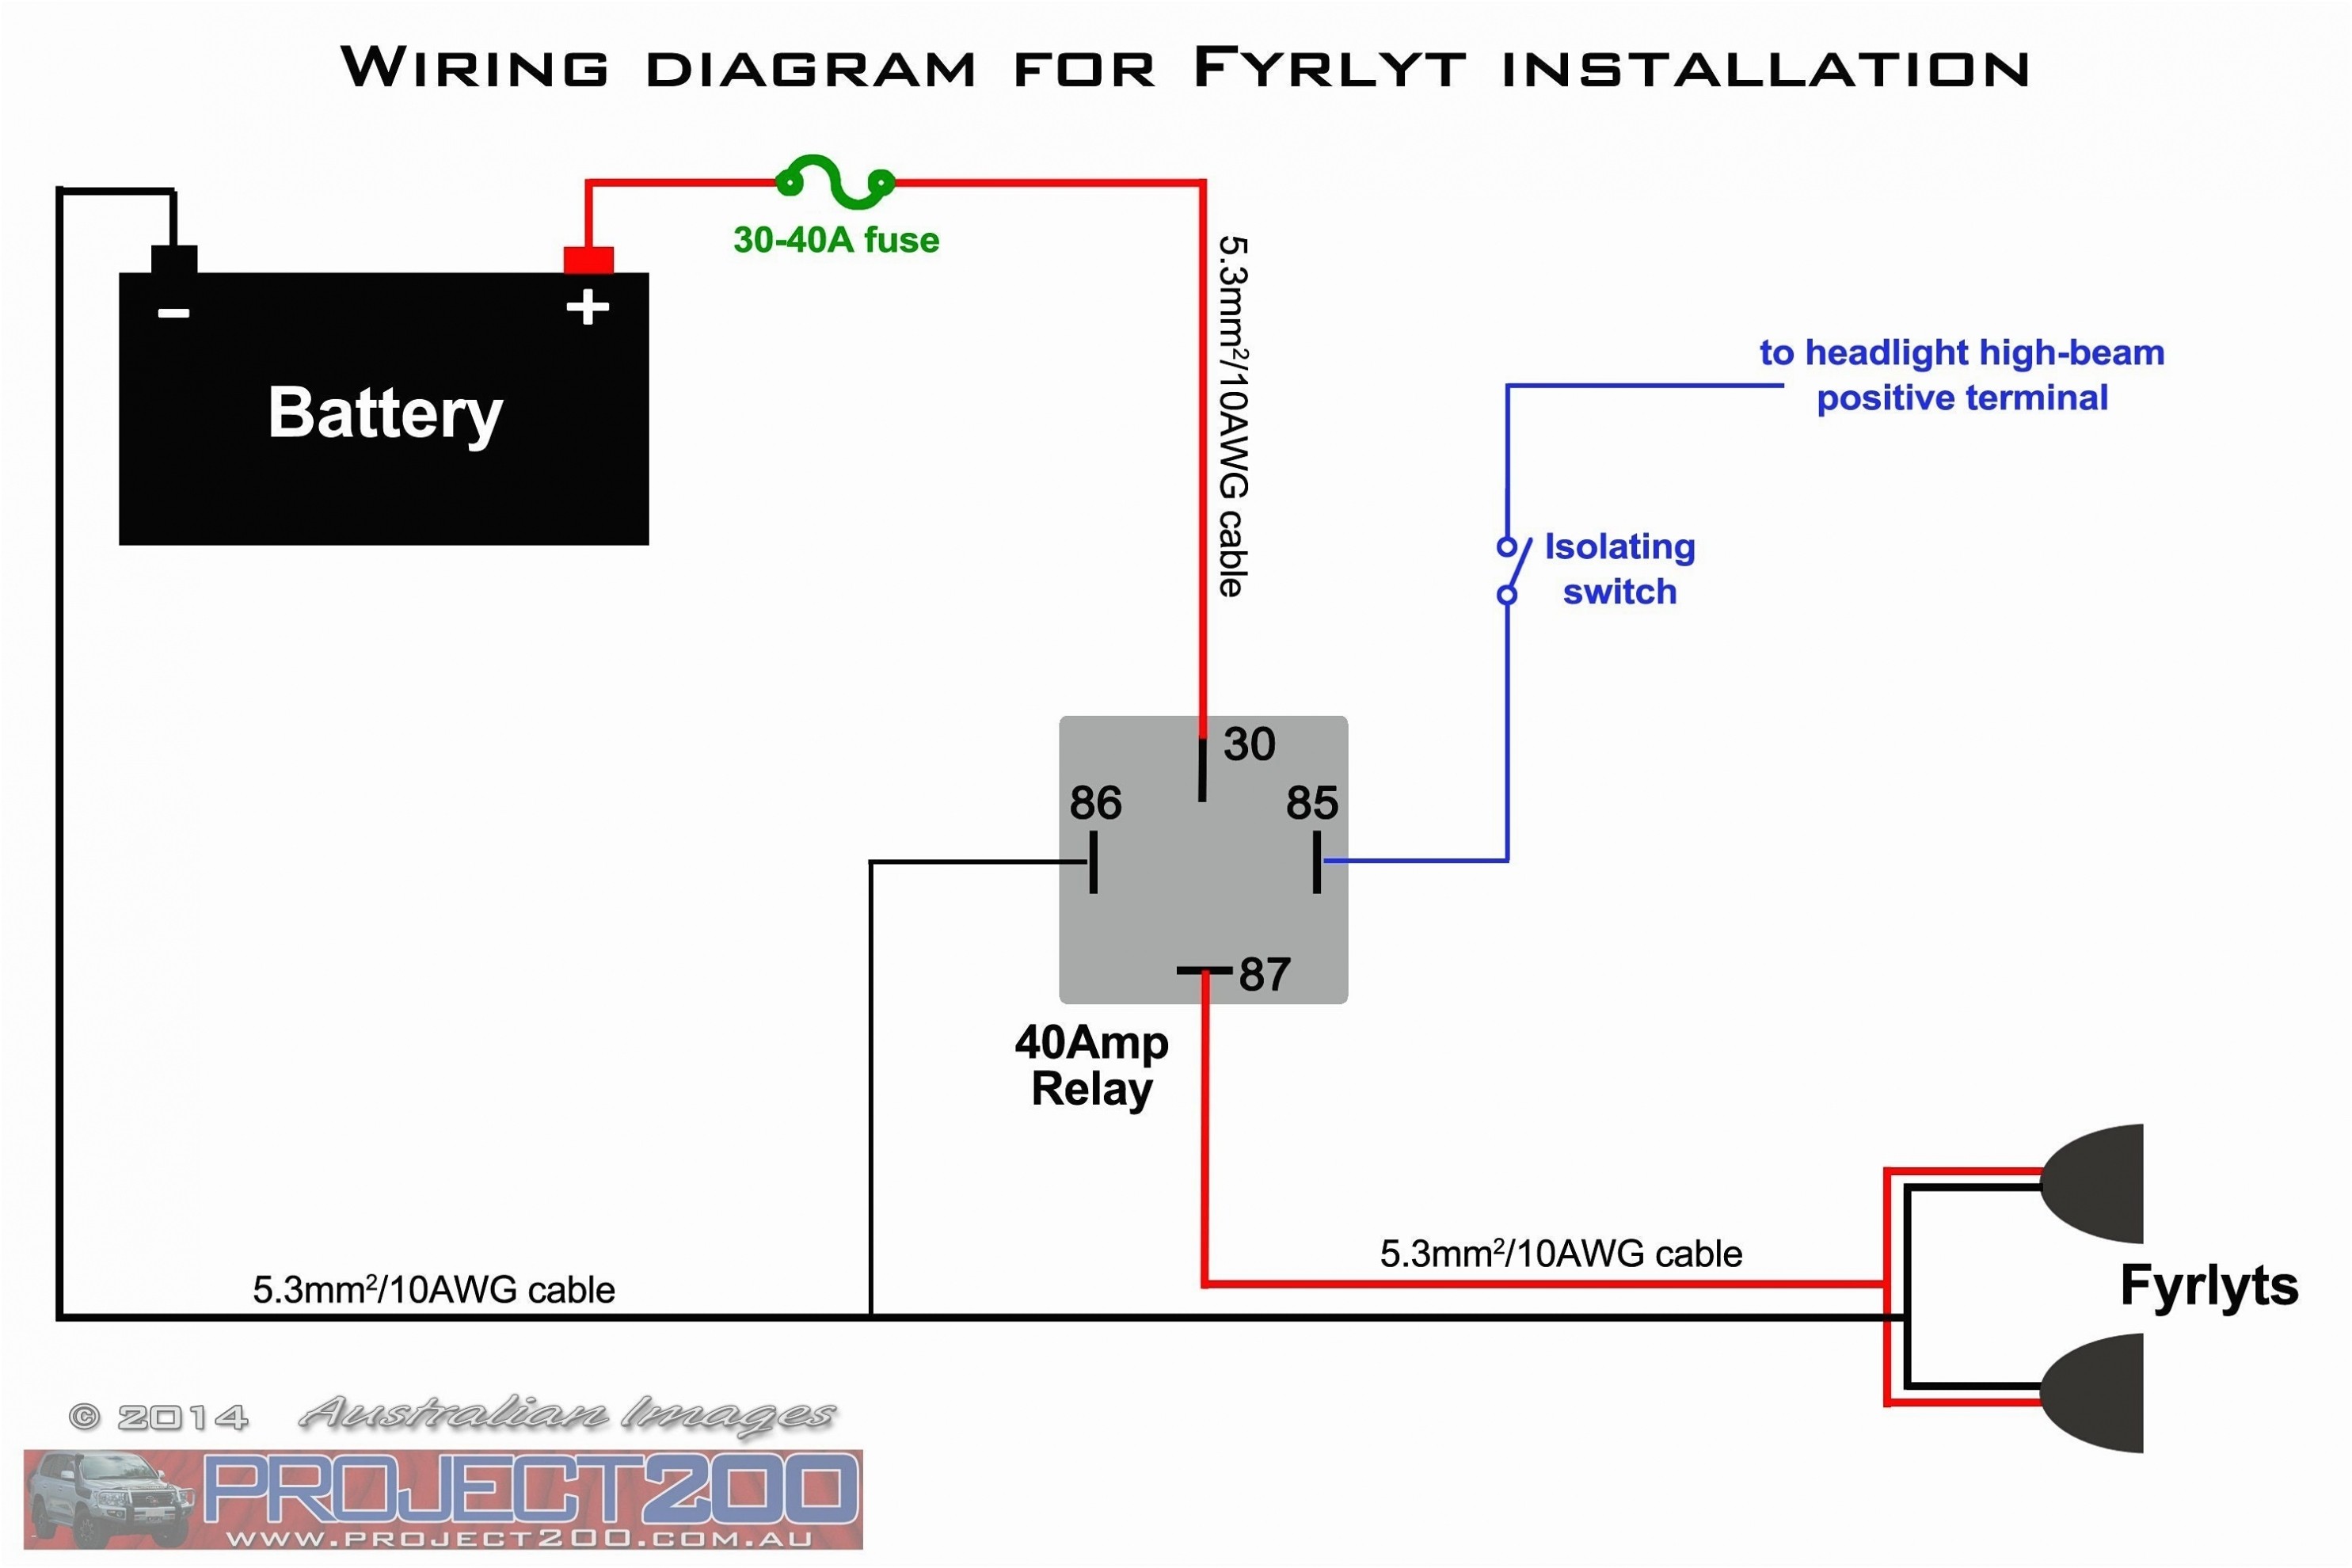 2 Pin Flasher Vs 3 Pin Flasher Diagram] 5 Pin Relay Wiring Diagram Pool Heater Full Version Of 2 Pin Flasher Vs 3 Pin Flasher